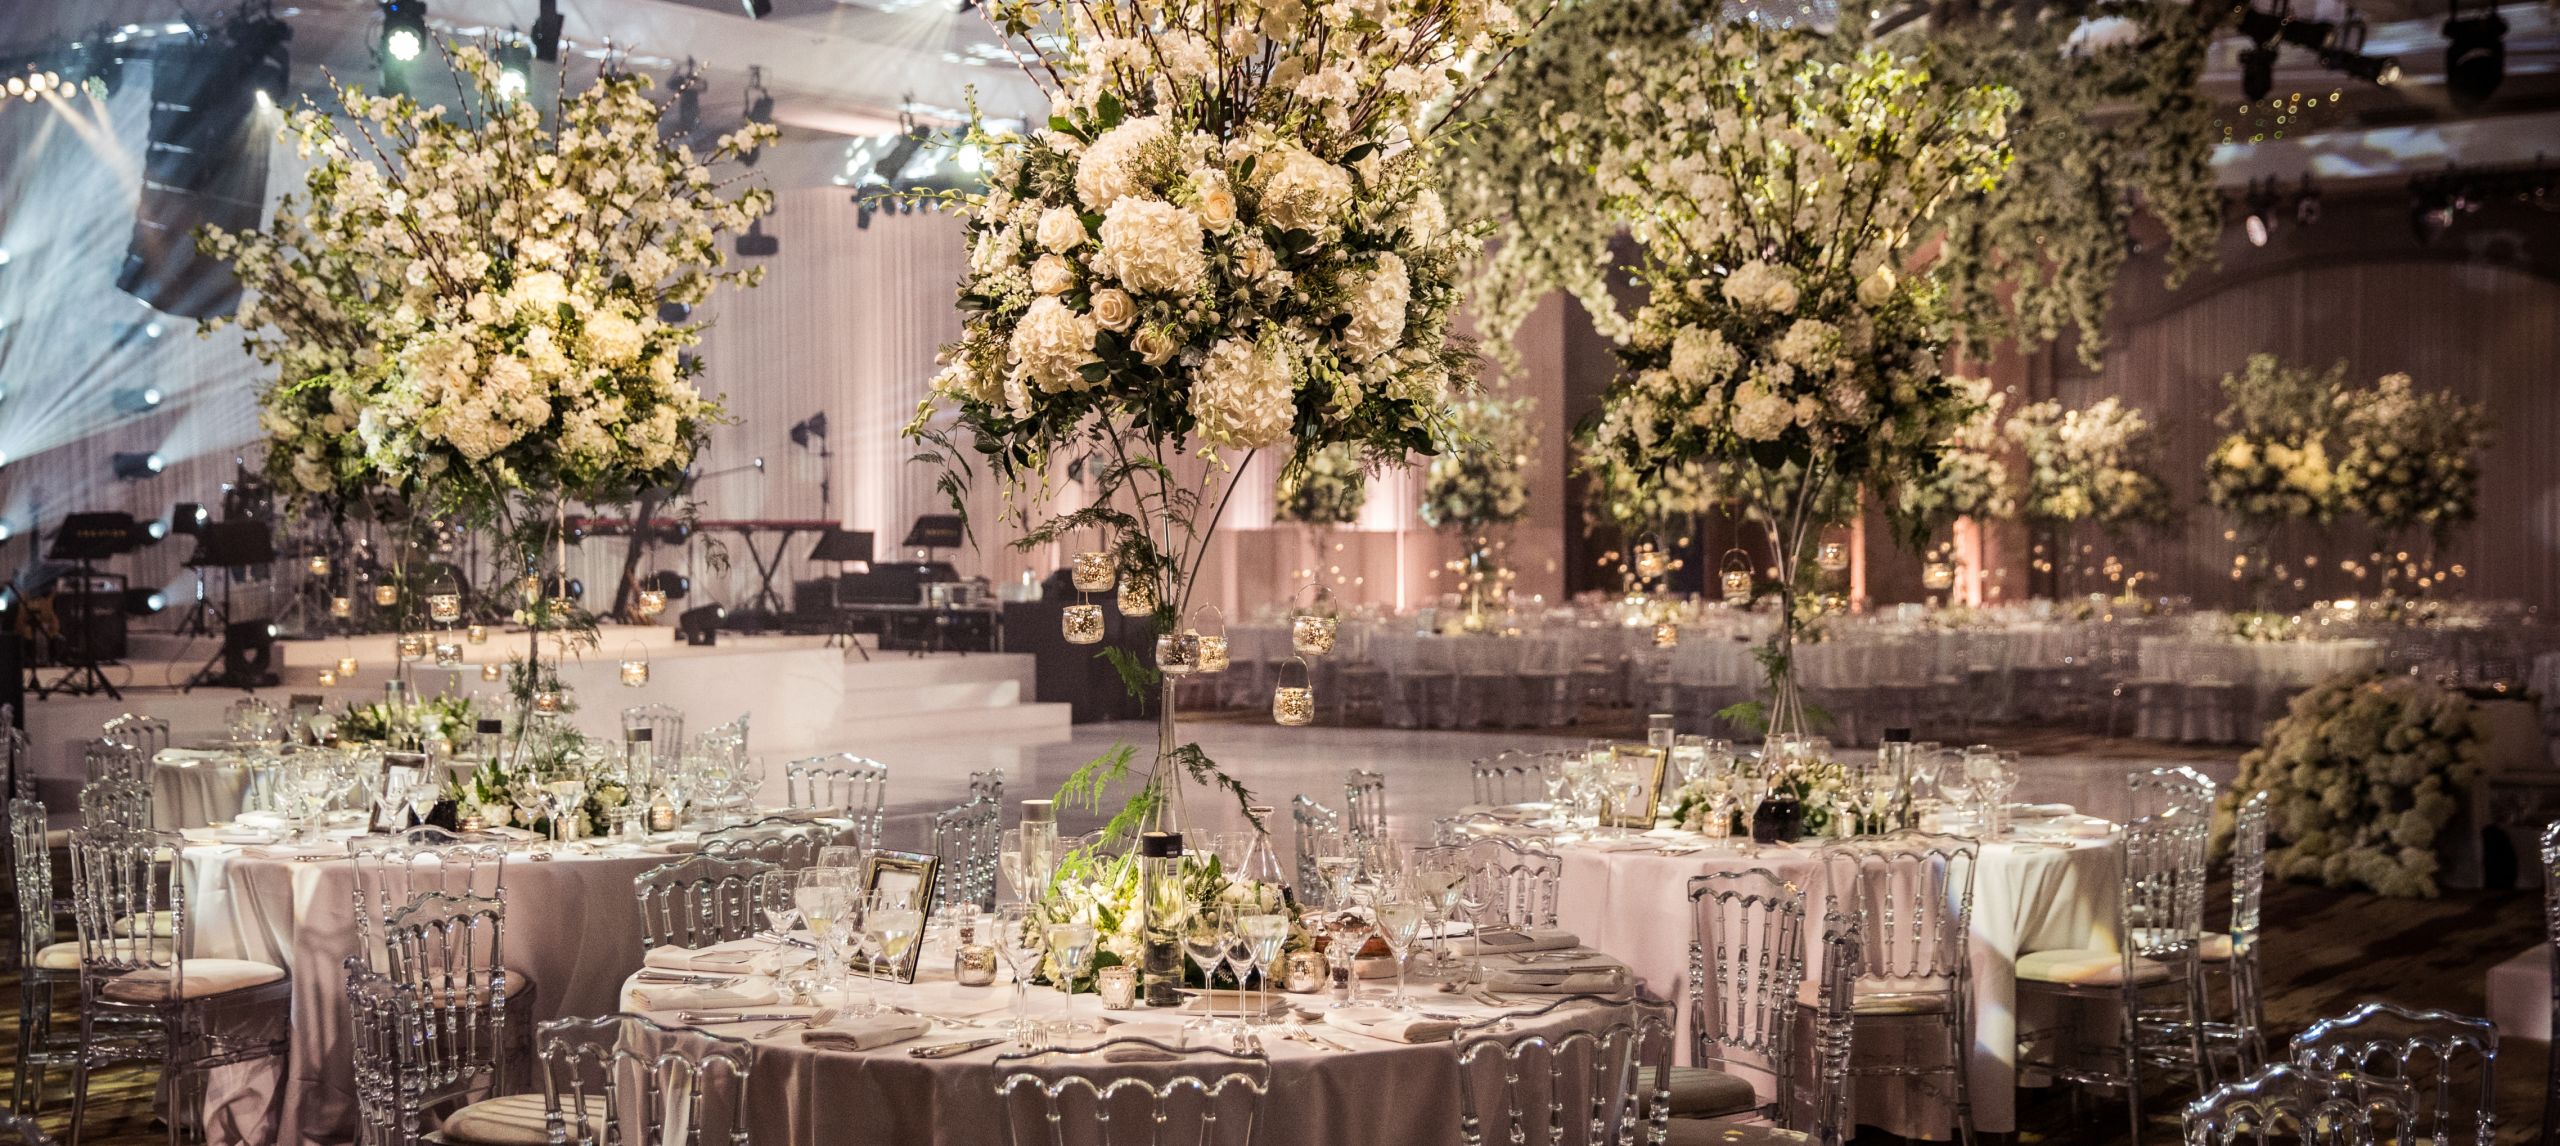 Bruiloftstafel ingericht met bloemen